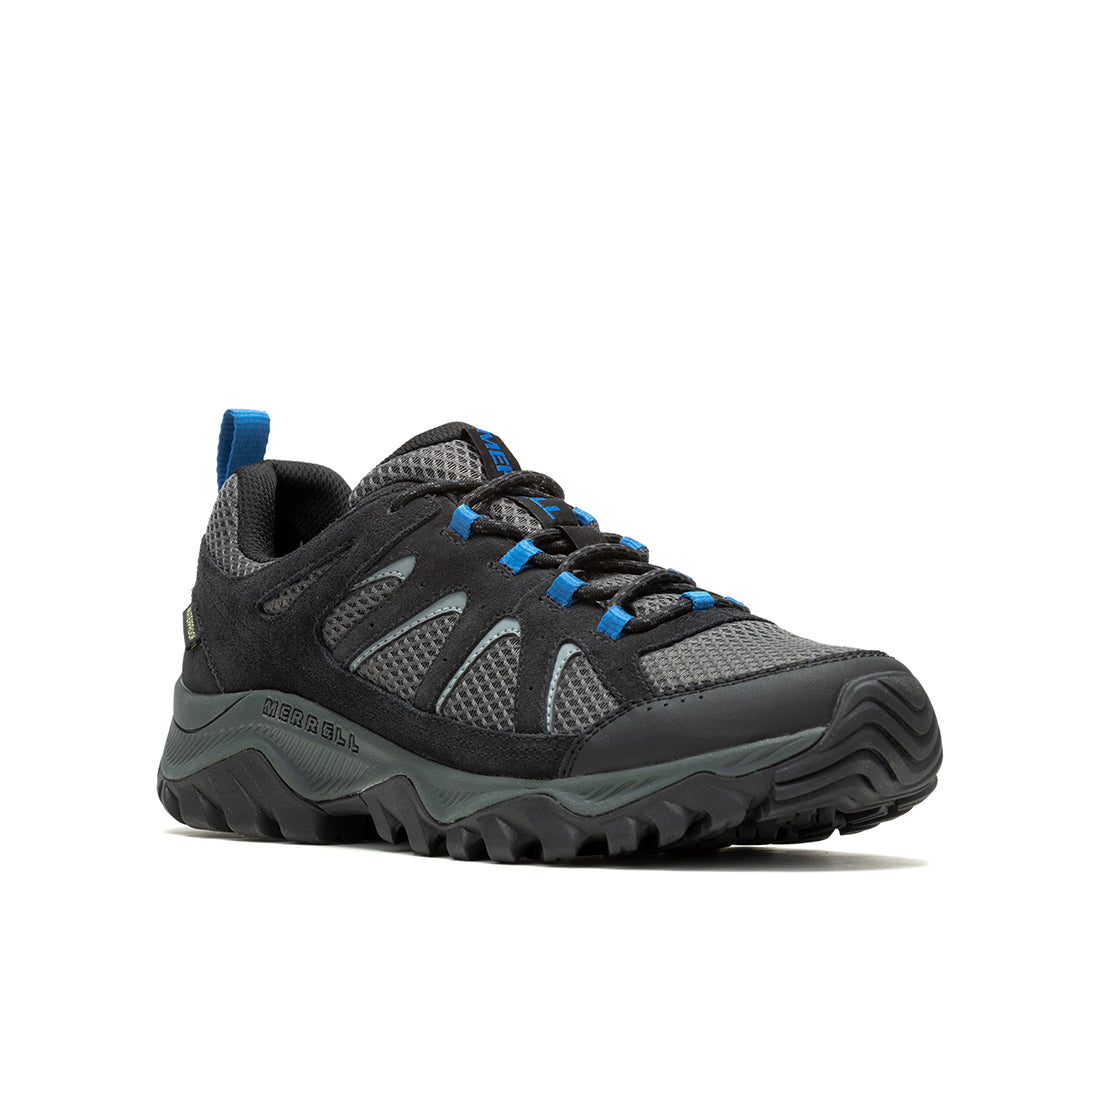 Oakcreek Waterproof-Black/Blue Mens Hiking Shoes - 0